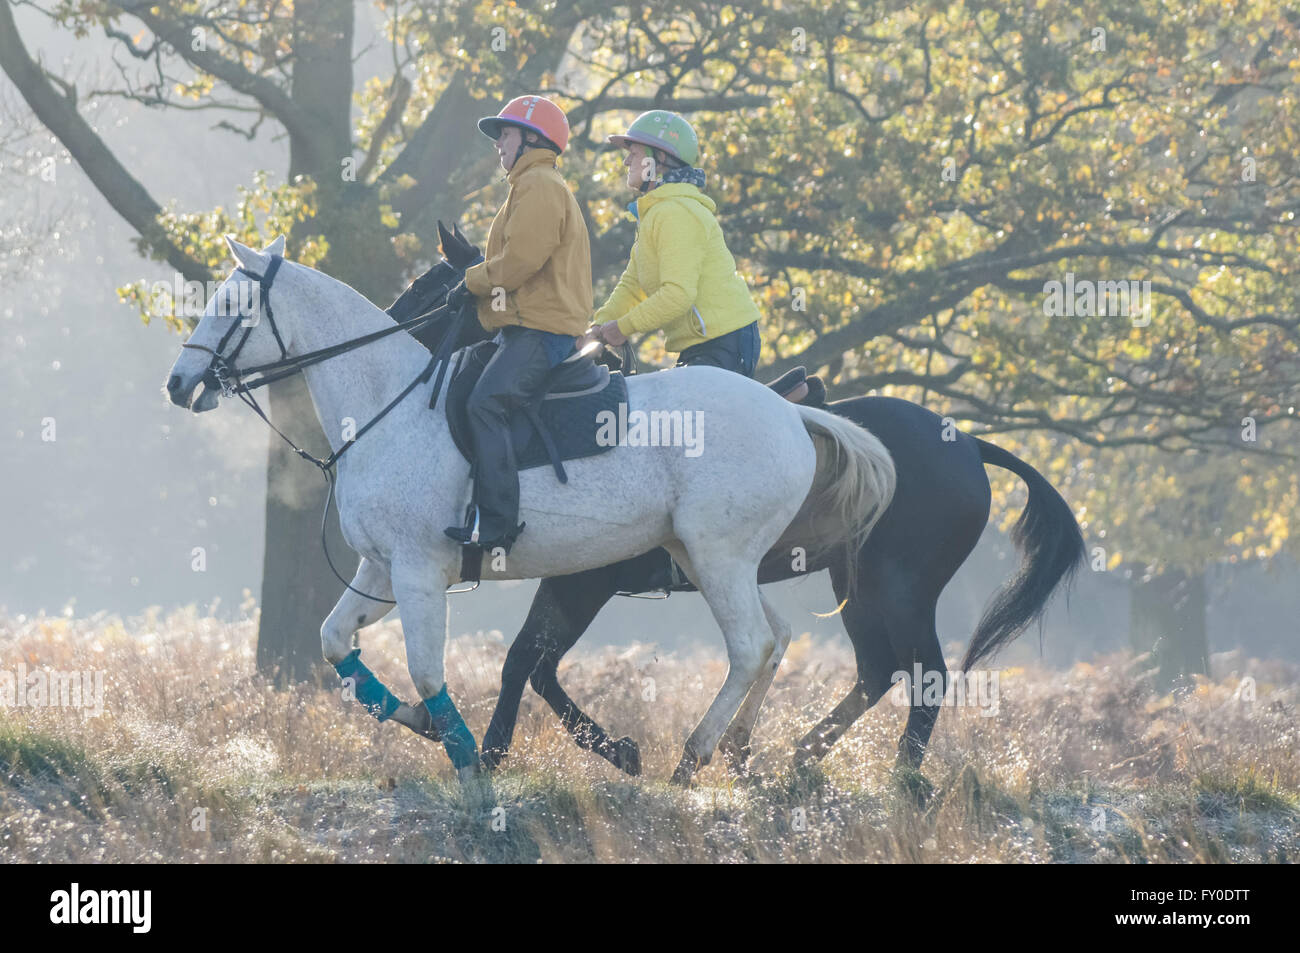 Personnes équitation dans Richmond Park pendant la matinée brumeux, Londres Angleterre Royaume-Uni Banque D'Images